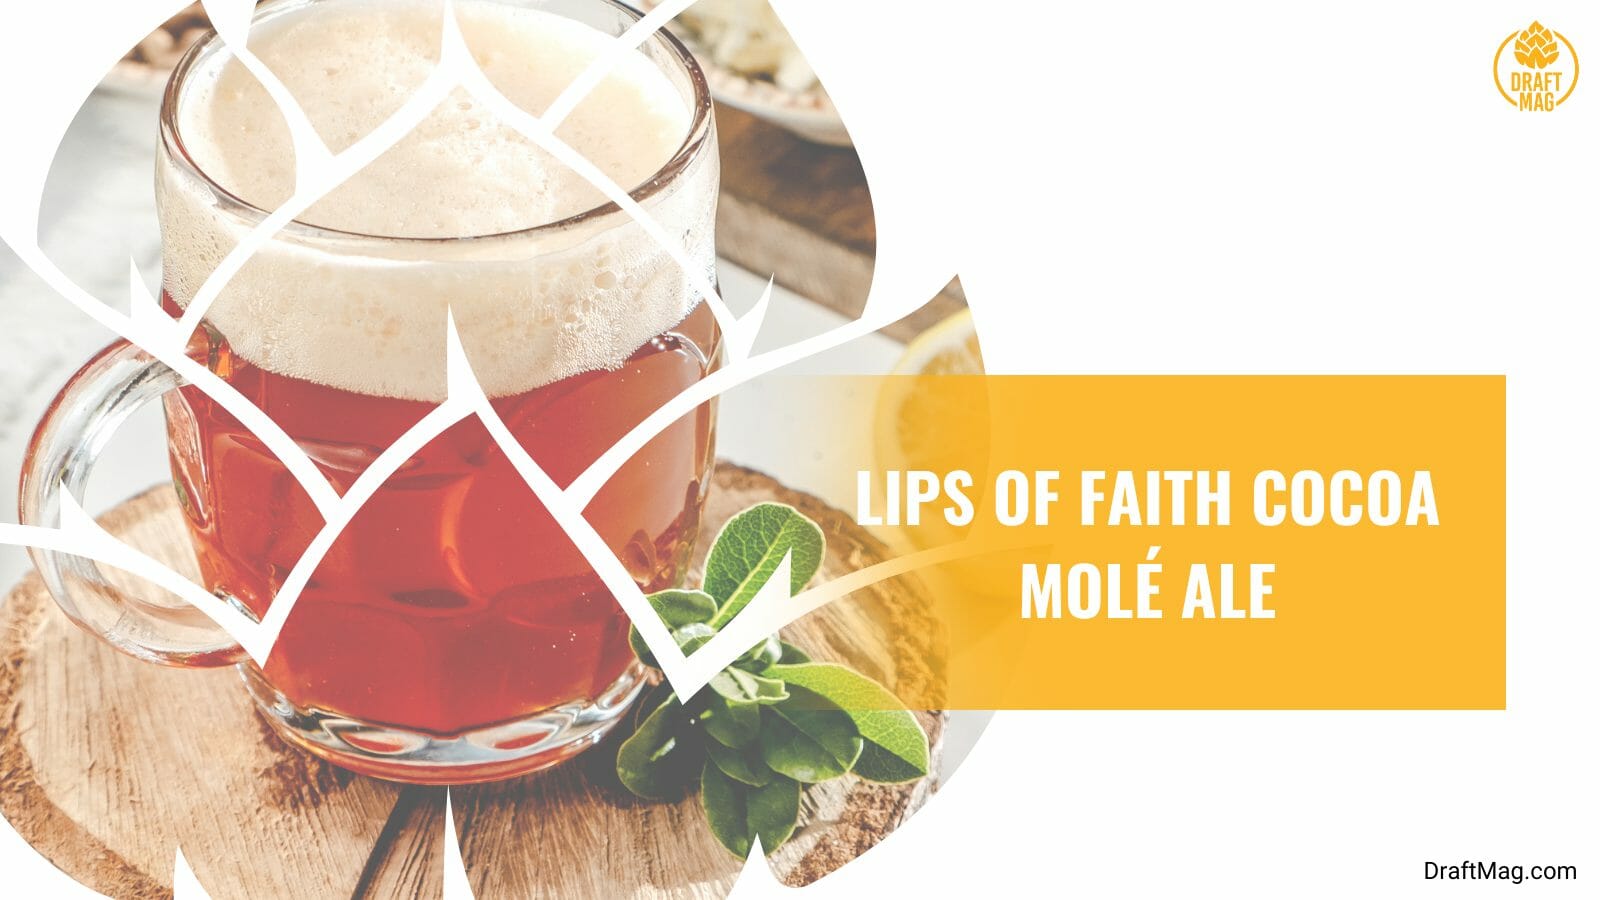 Lips of faith cocoa mole ale